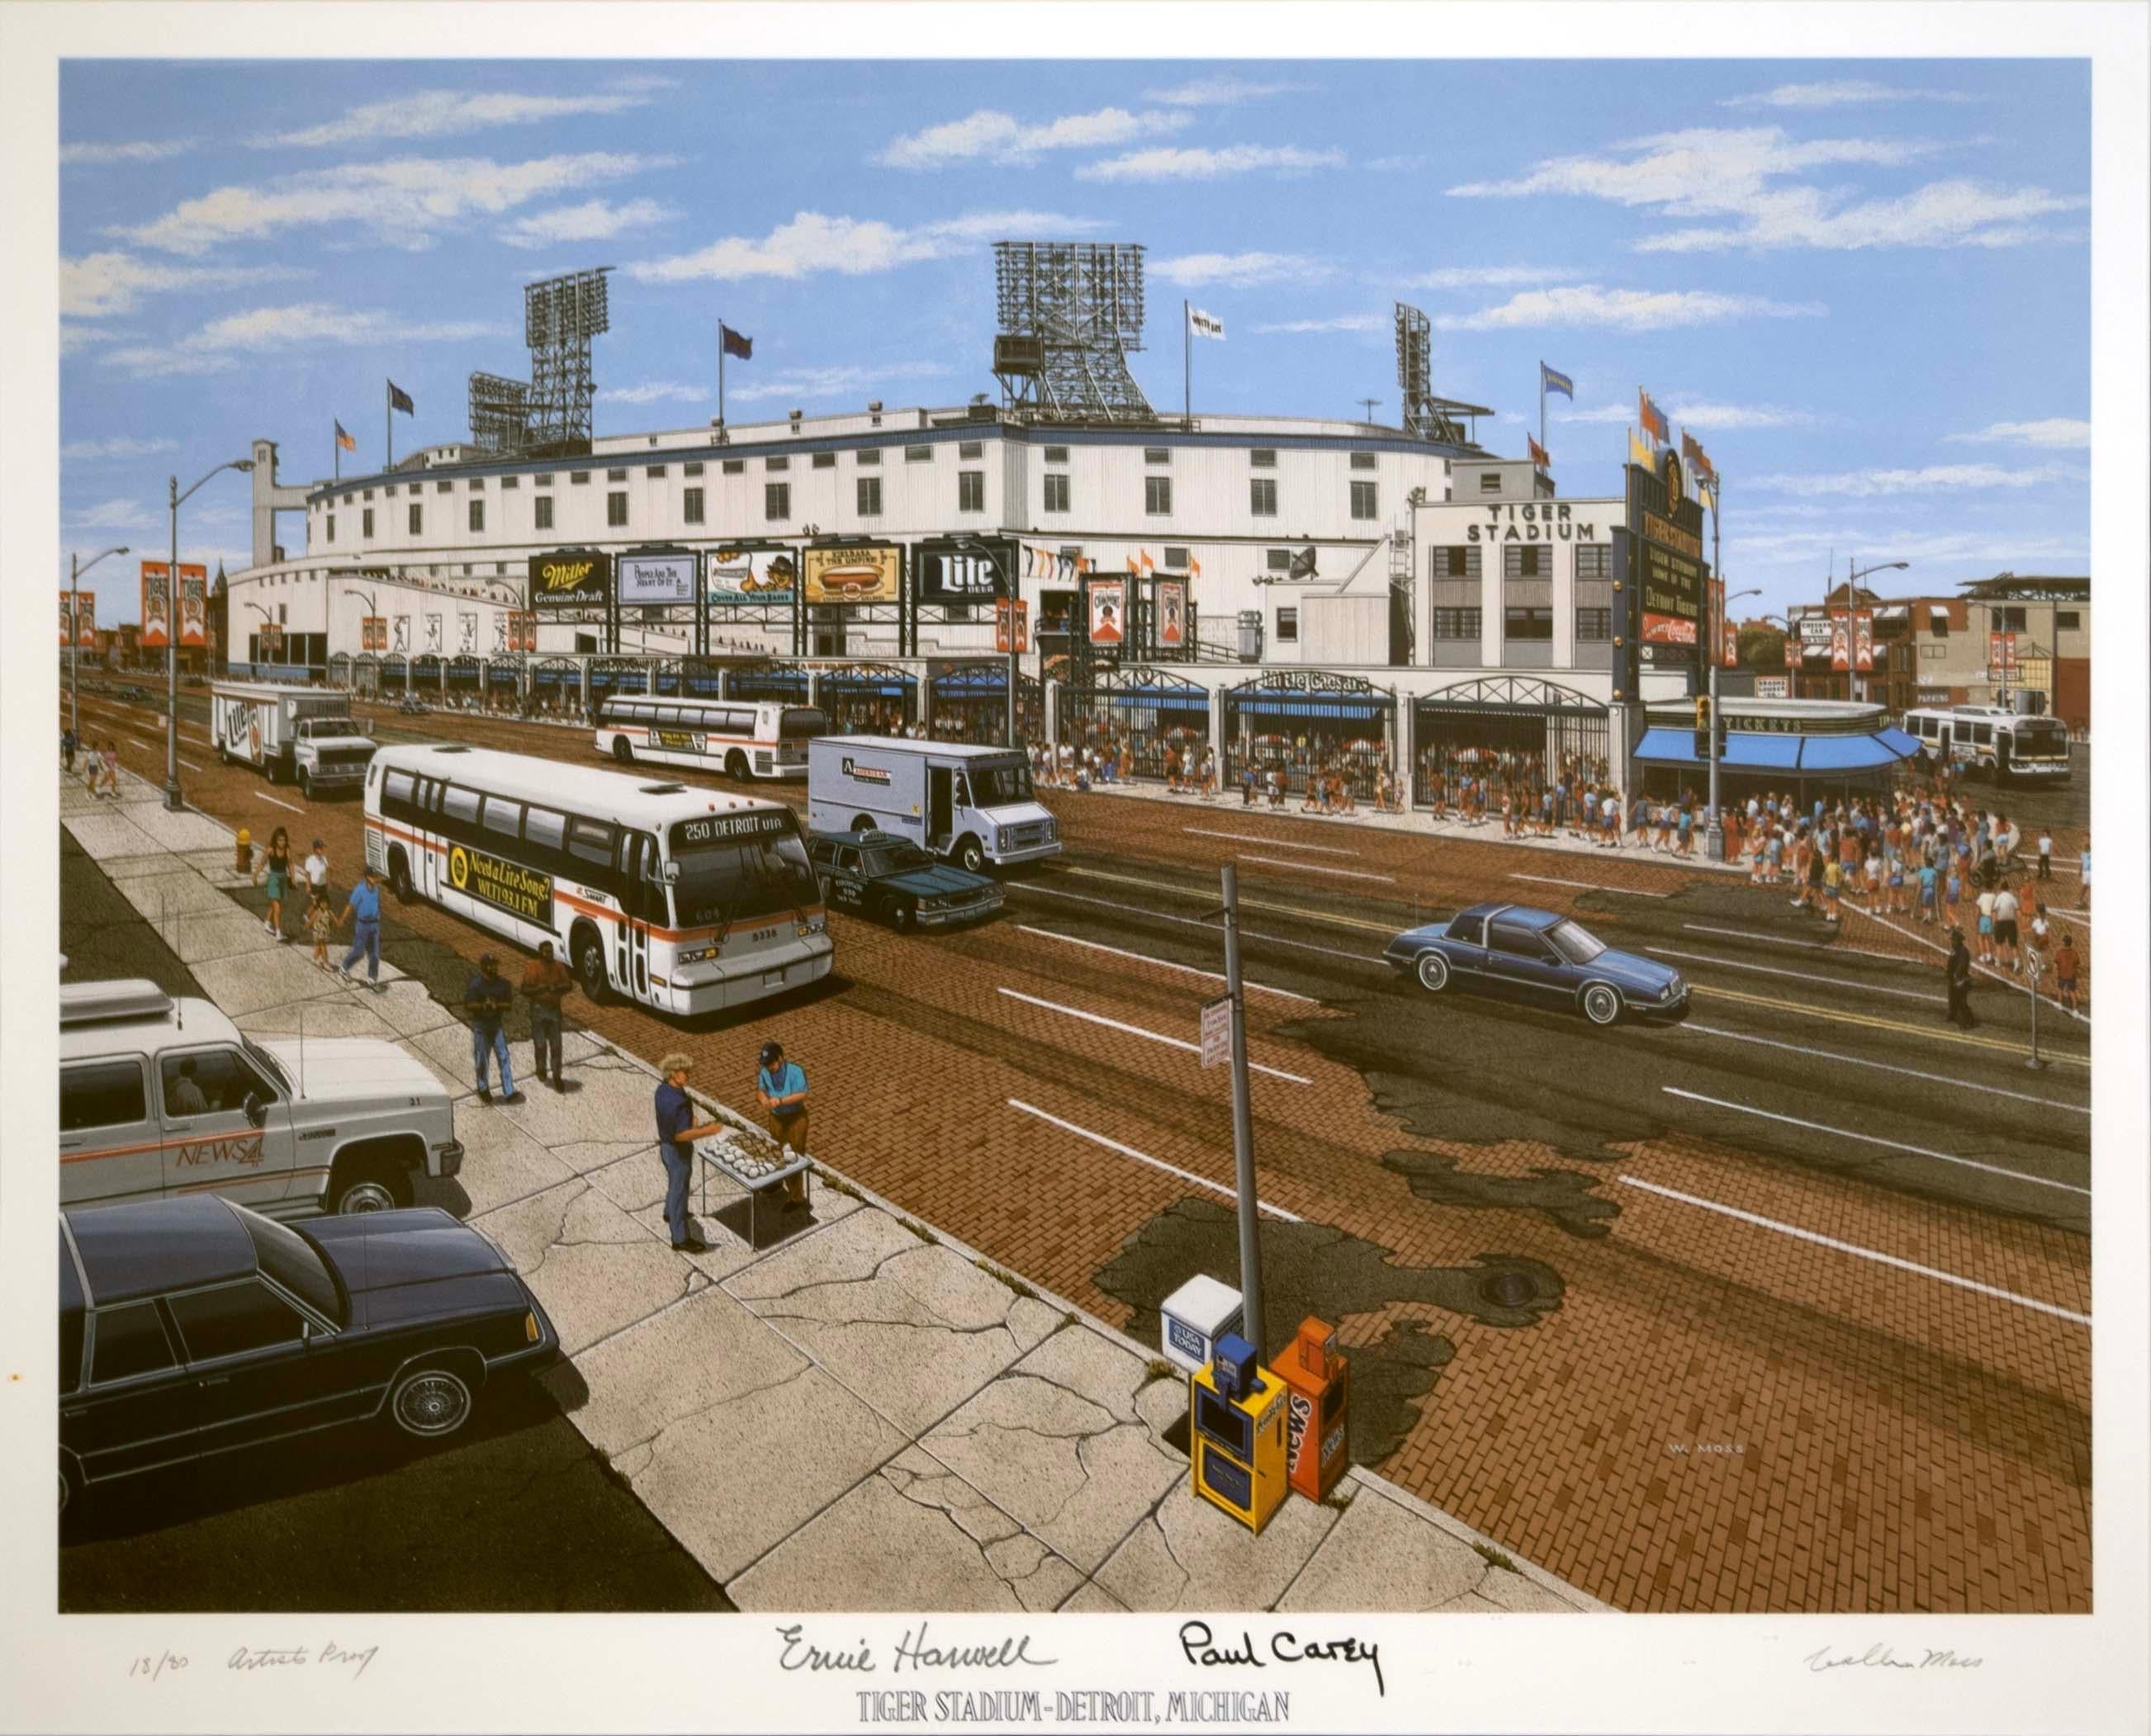 Ein nostalgisches Sammlerstück für Detroit-Baseball-Fans: eine alte Lithographie von William Moss mit dem Tiger Stadium in limitierter Auflage. Das früher als Navin Field und Briggs Stadium bekannte Stadion liegt im Stadtteil Corktown von Detroit,